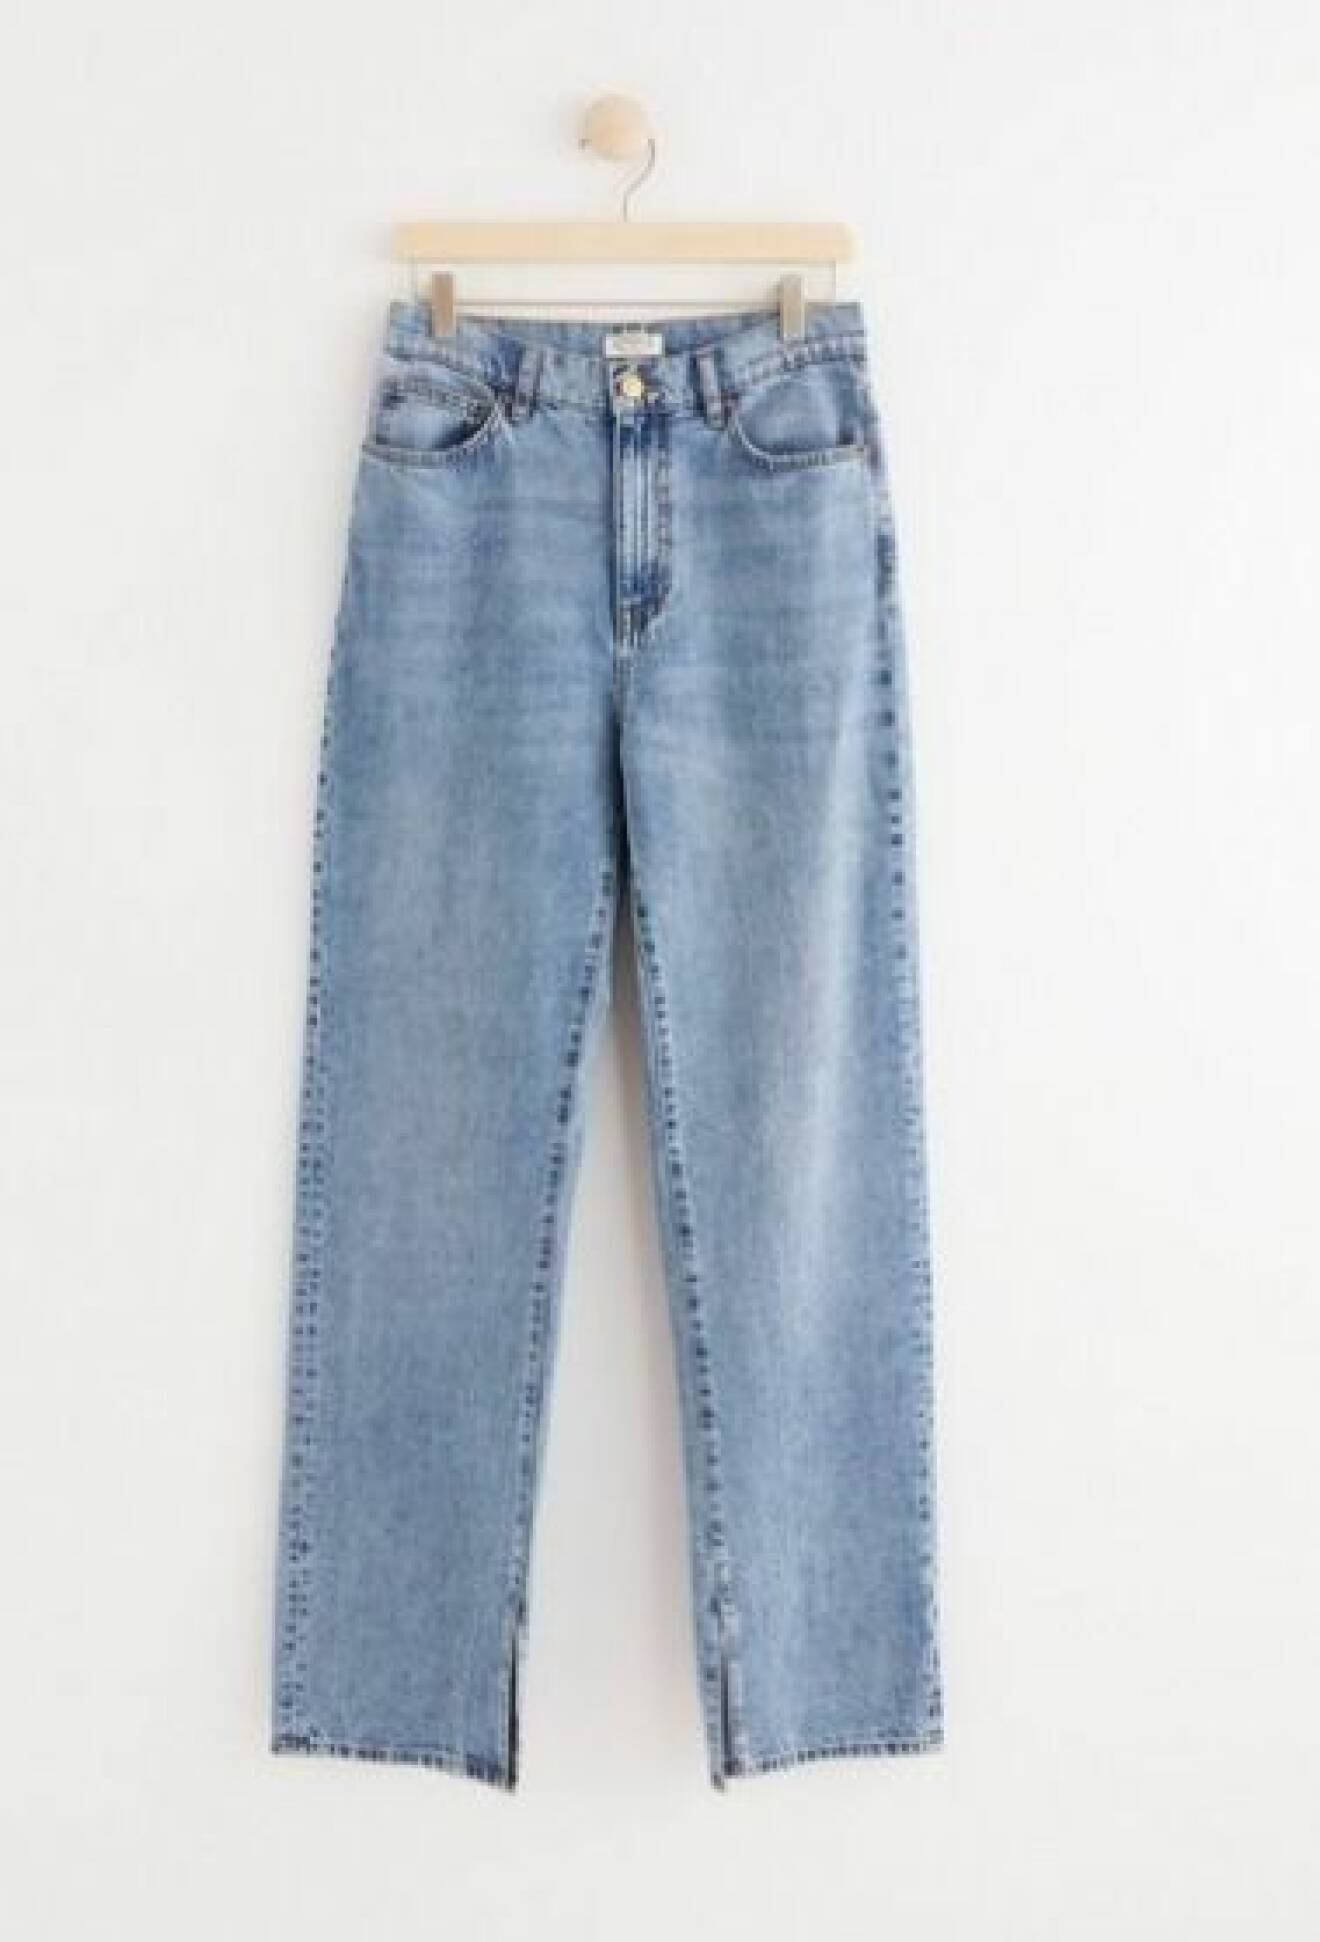 Ljusblå jeans, långa i rak modell med slits vid benslutet. Jeans från Lindex.